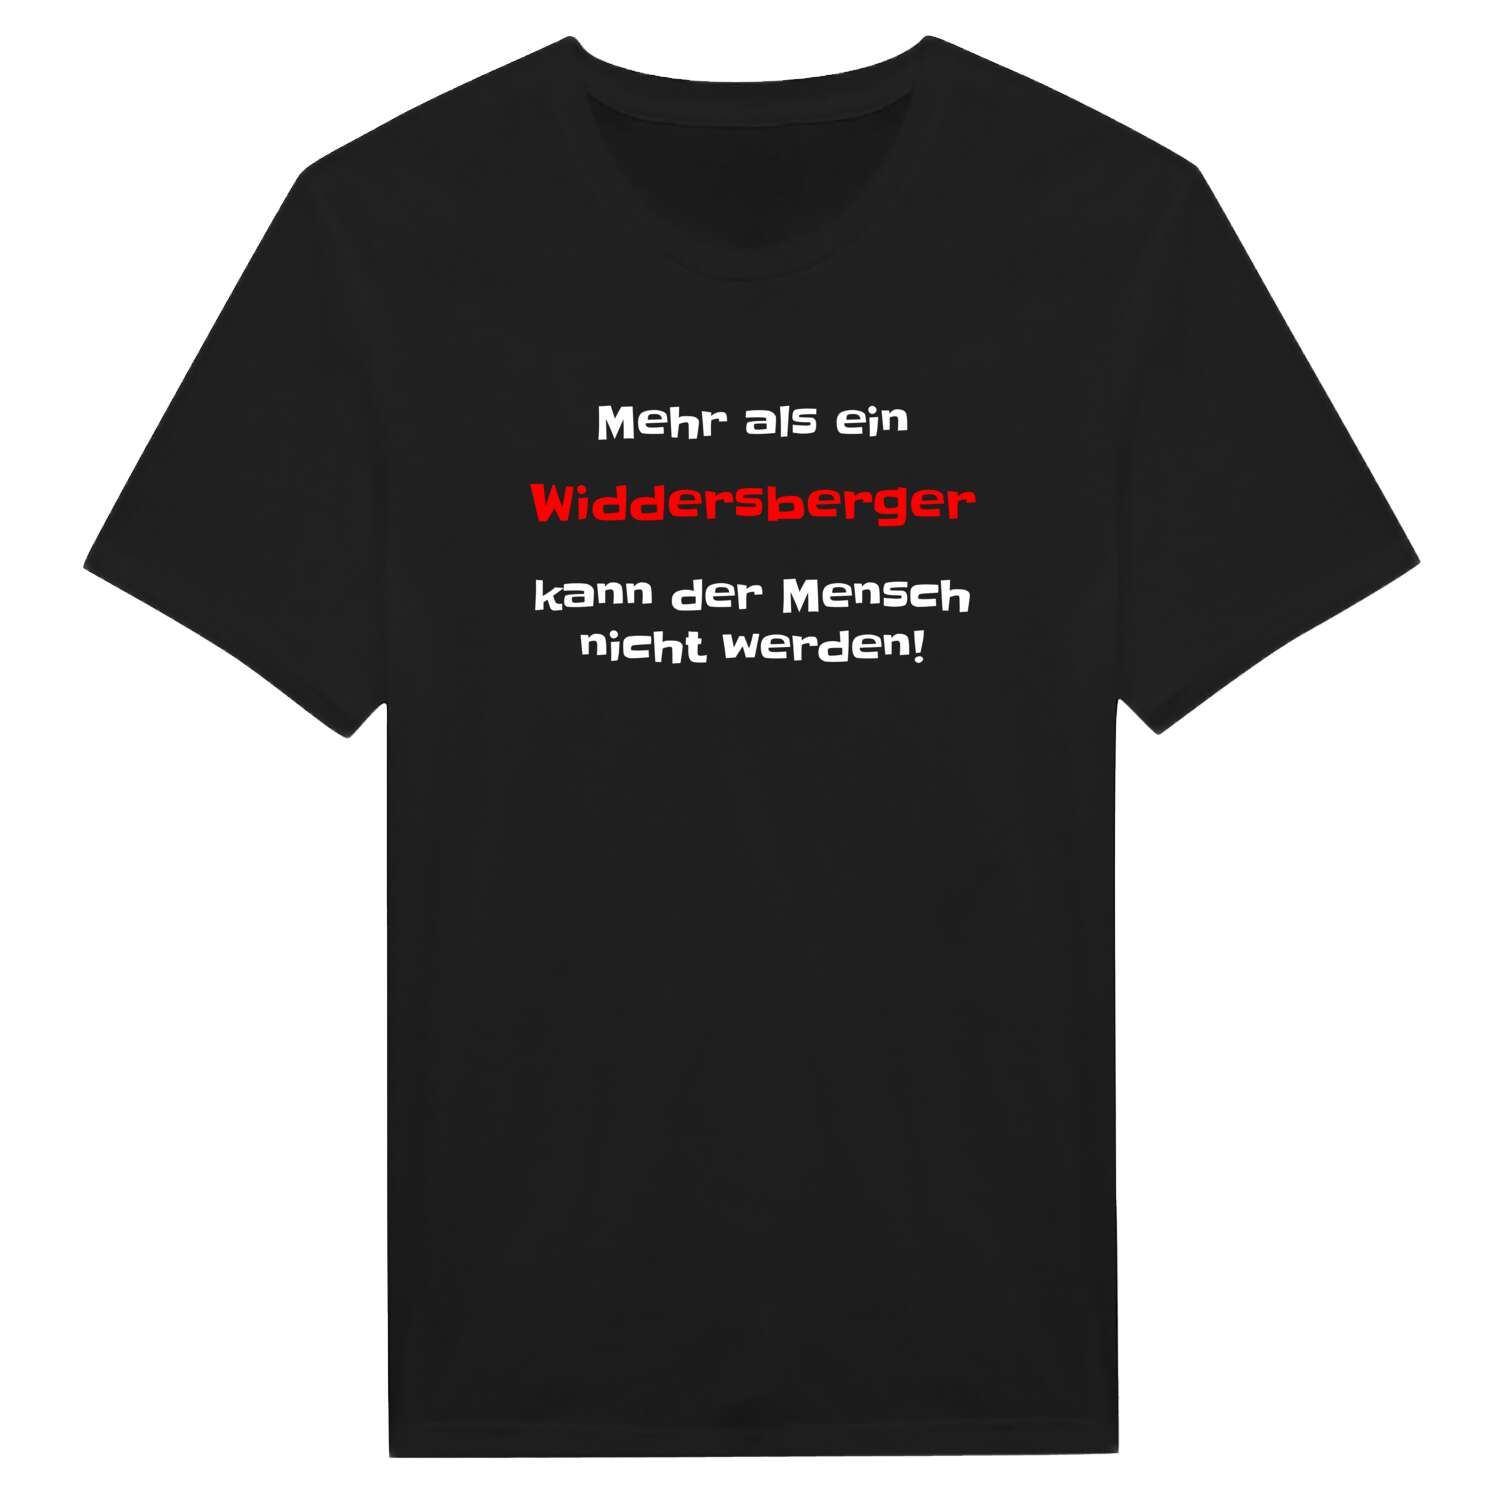 Widdersberg T-Shirt »Mehr als ein«